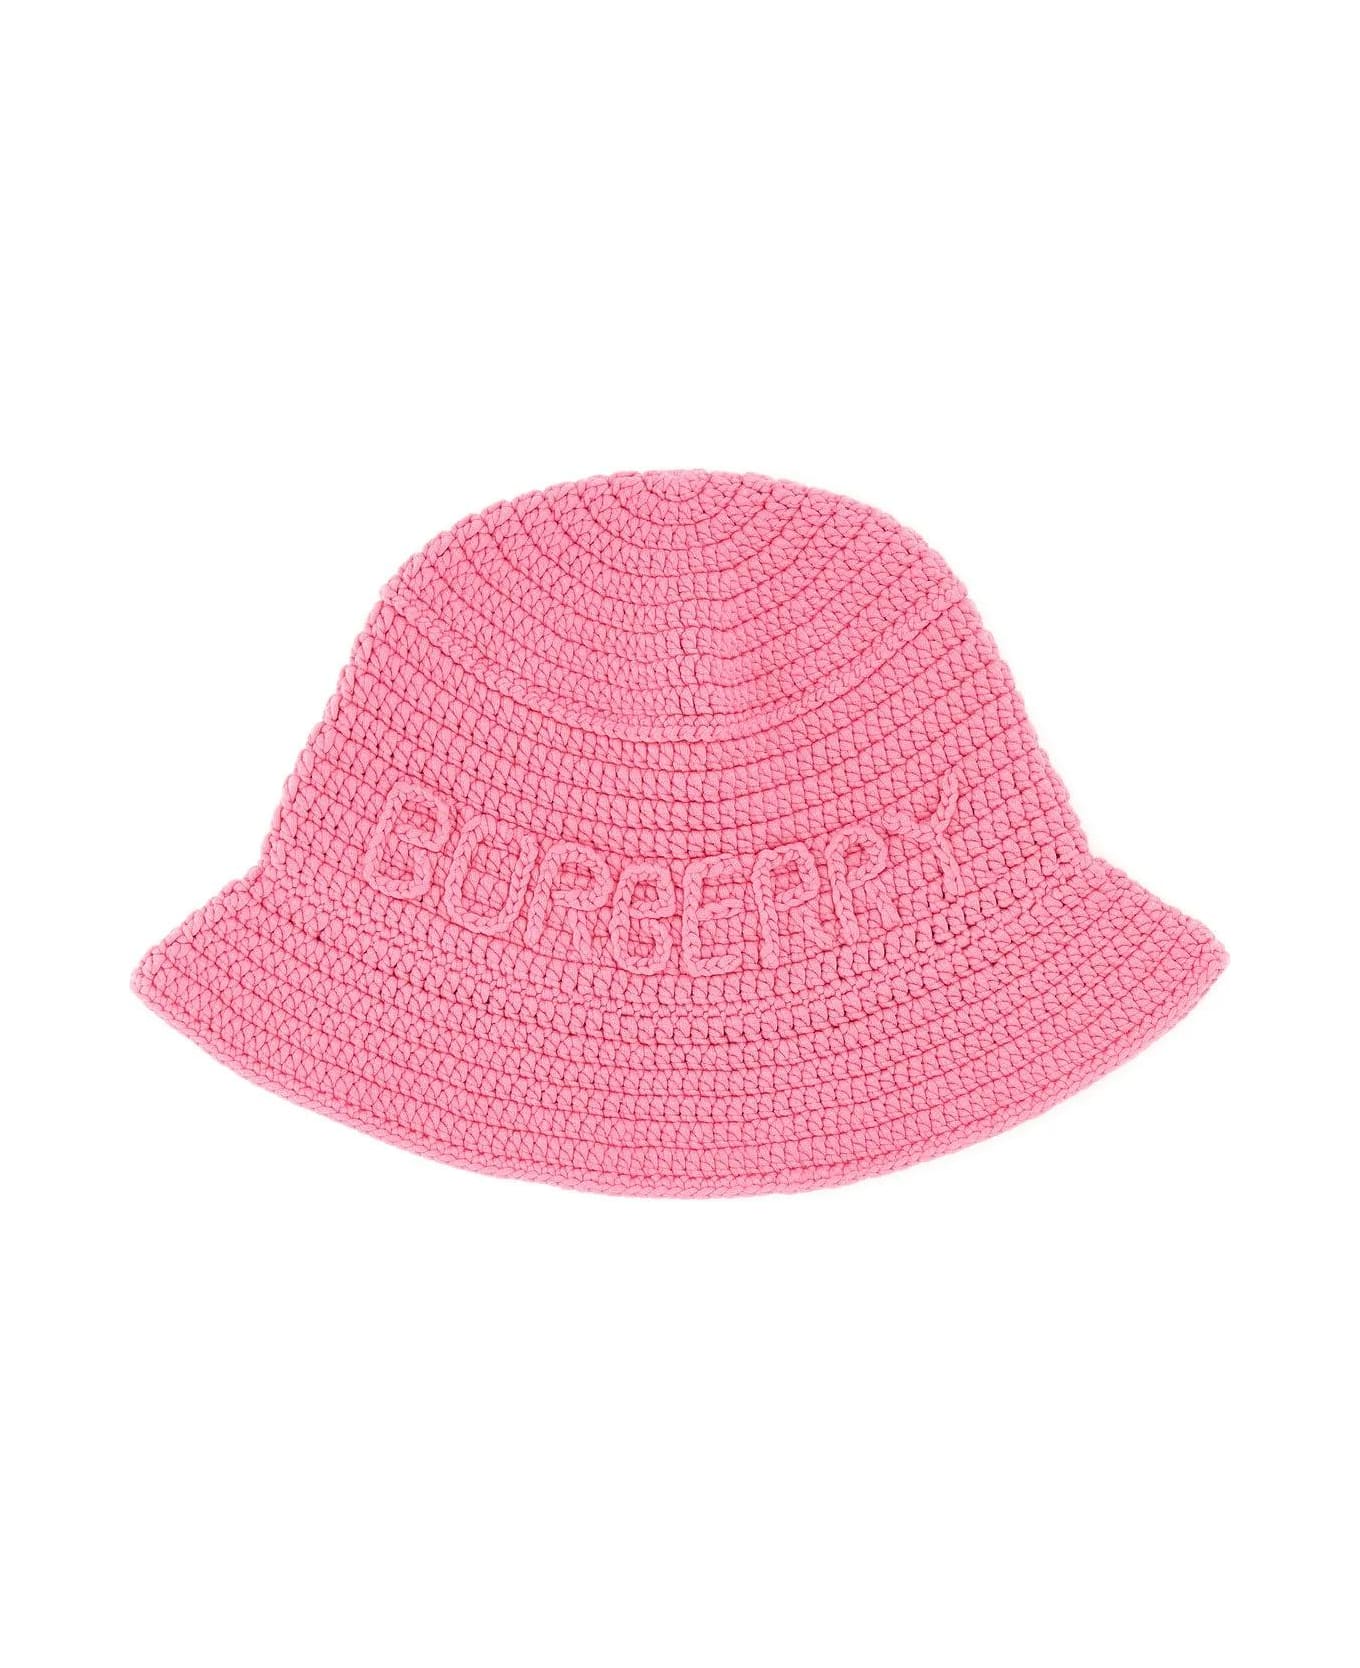 Burberry Pink Crochet Bucket Hat - Pink